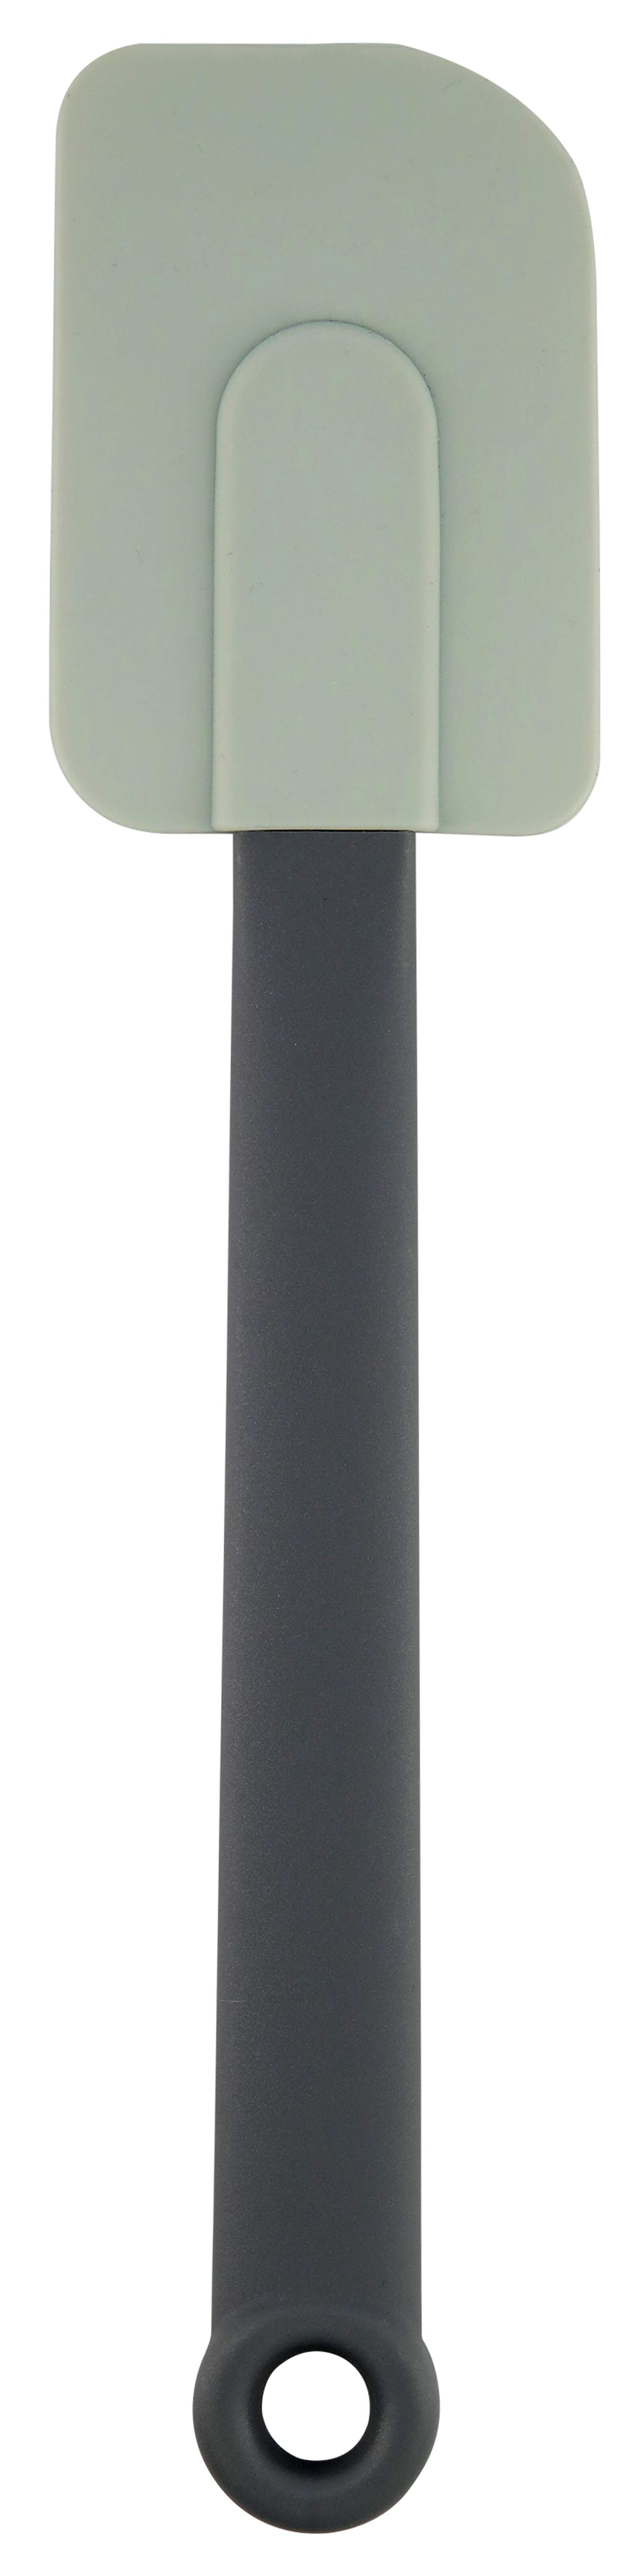 pannenlikker grijs siliconen 27cm - 80830011 - HEMA